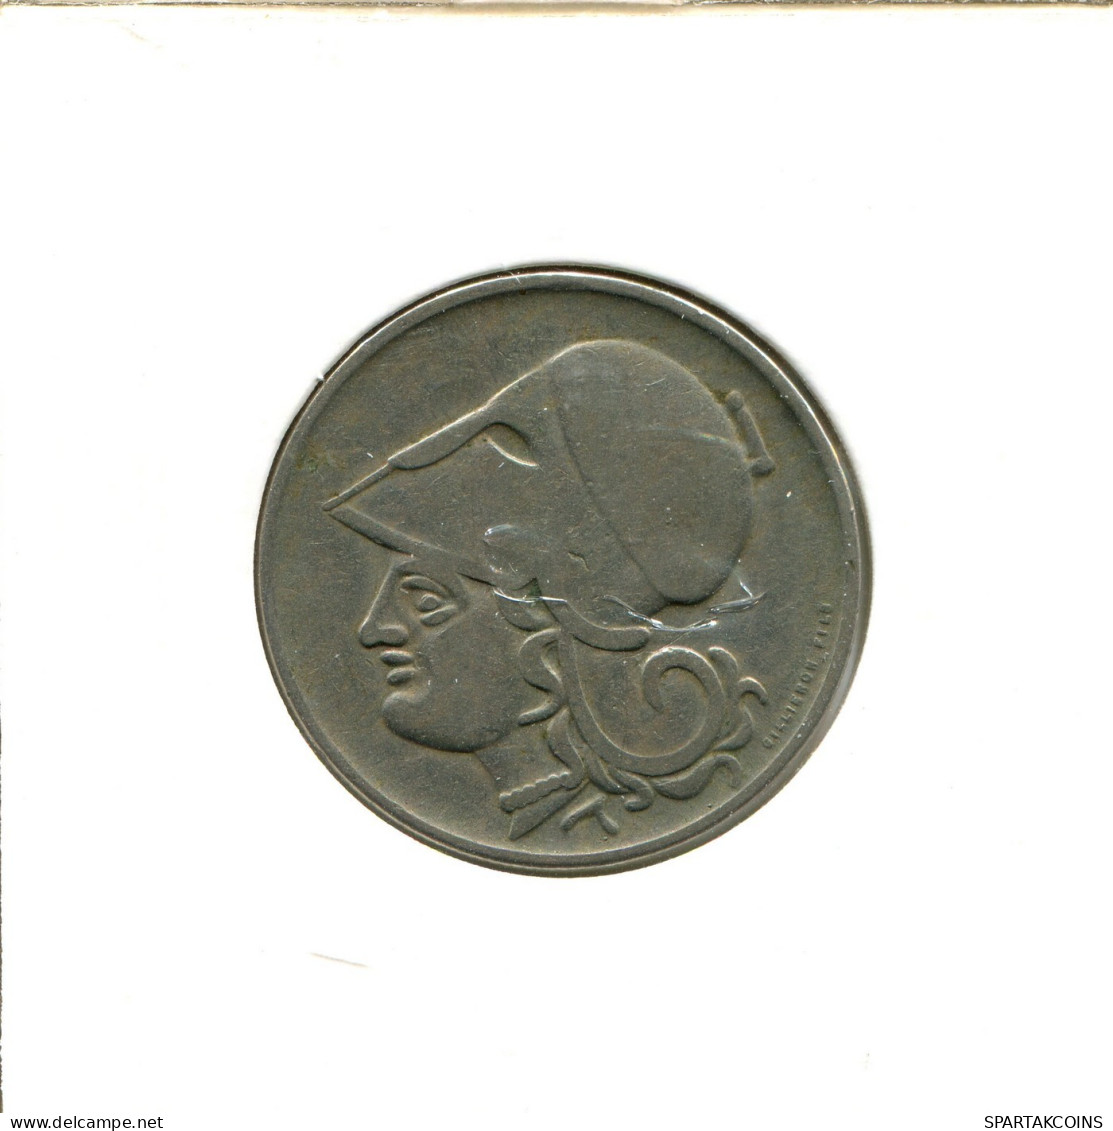 2 DRACHMAI 1926 GRECIA GREECE Moneda #AX632.E.A - Grèce